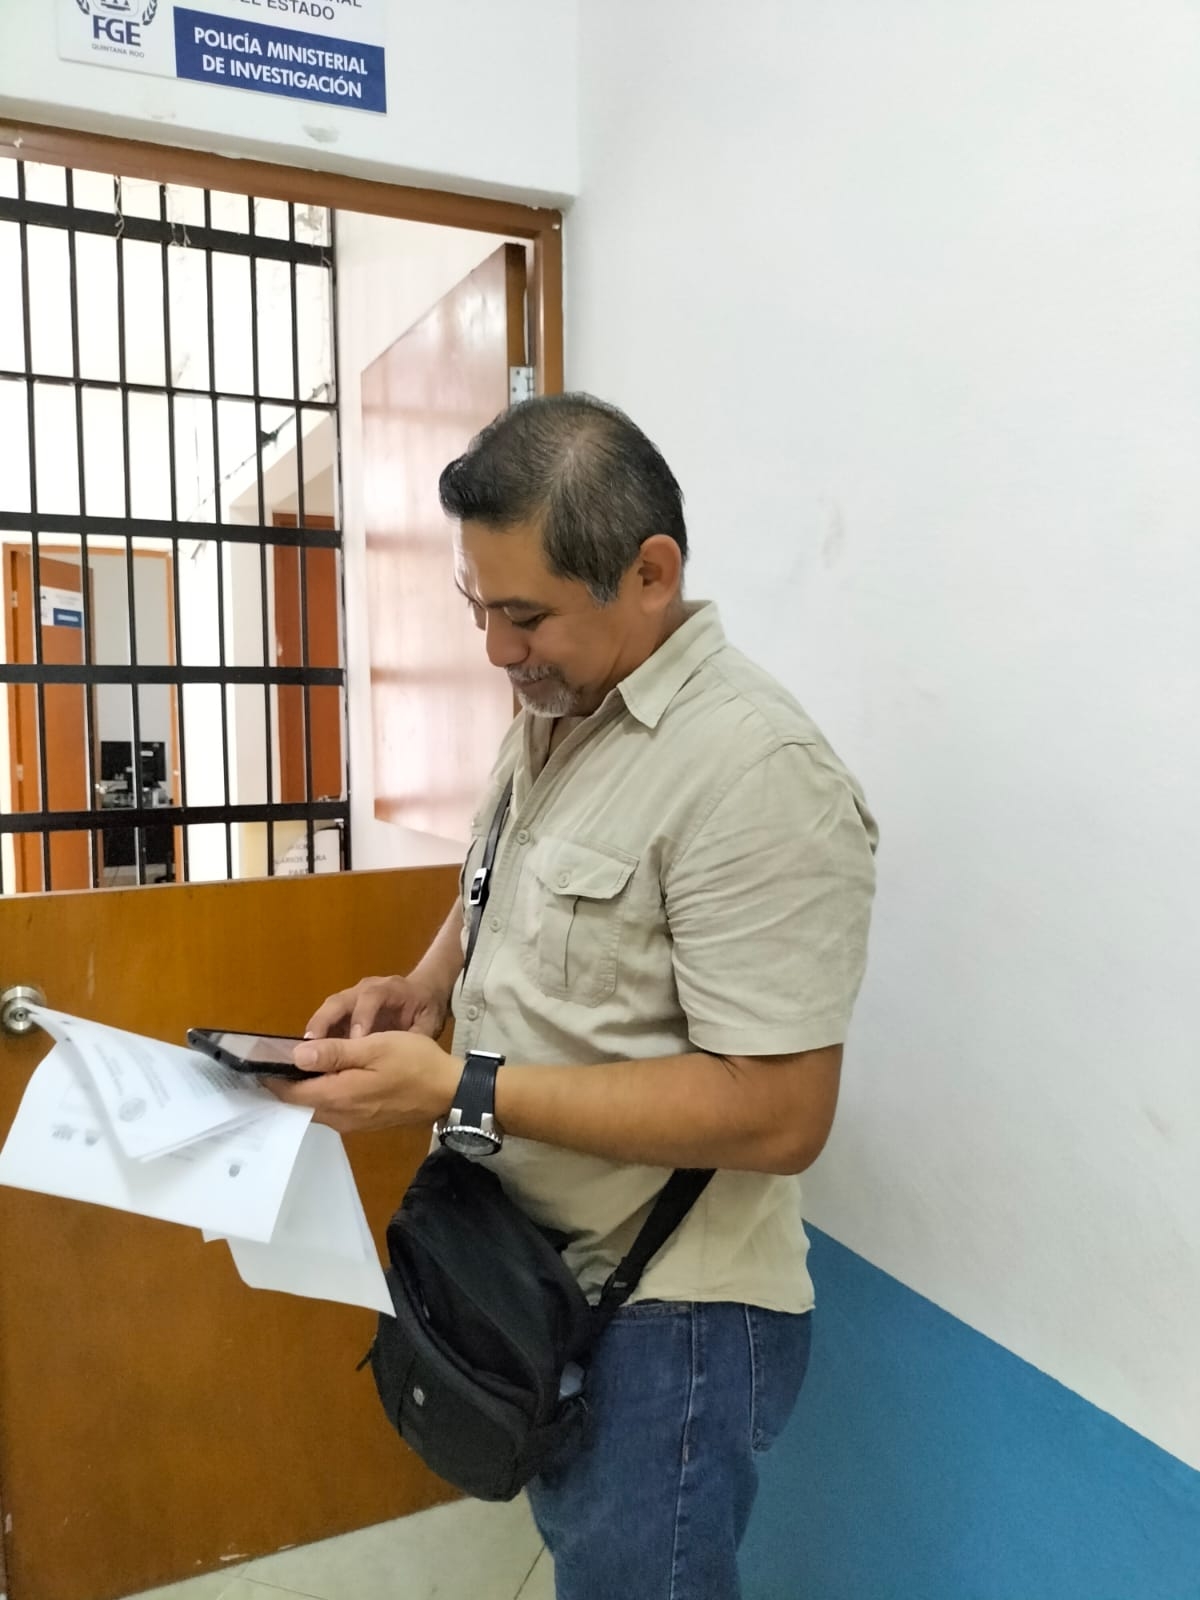 El excomandante de la Policía de Investigación fue transferido hacia Playa del Carmen, bajo un nuevo cargo el la corporación